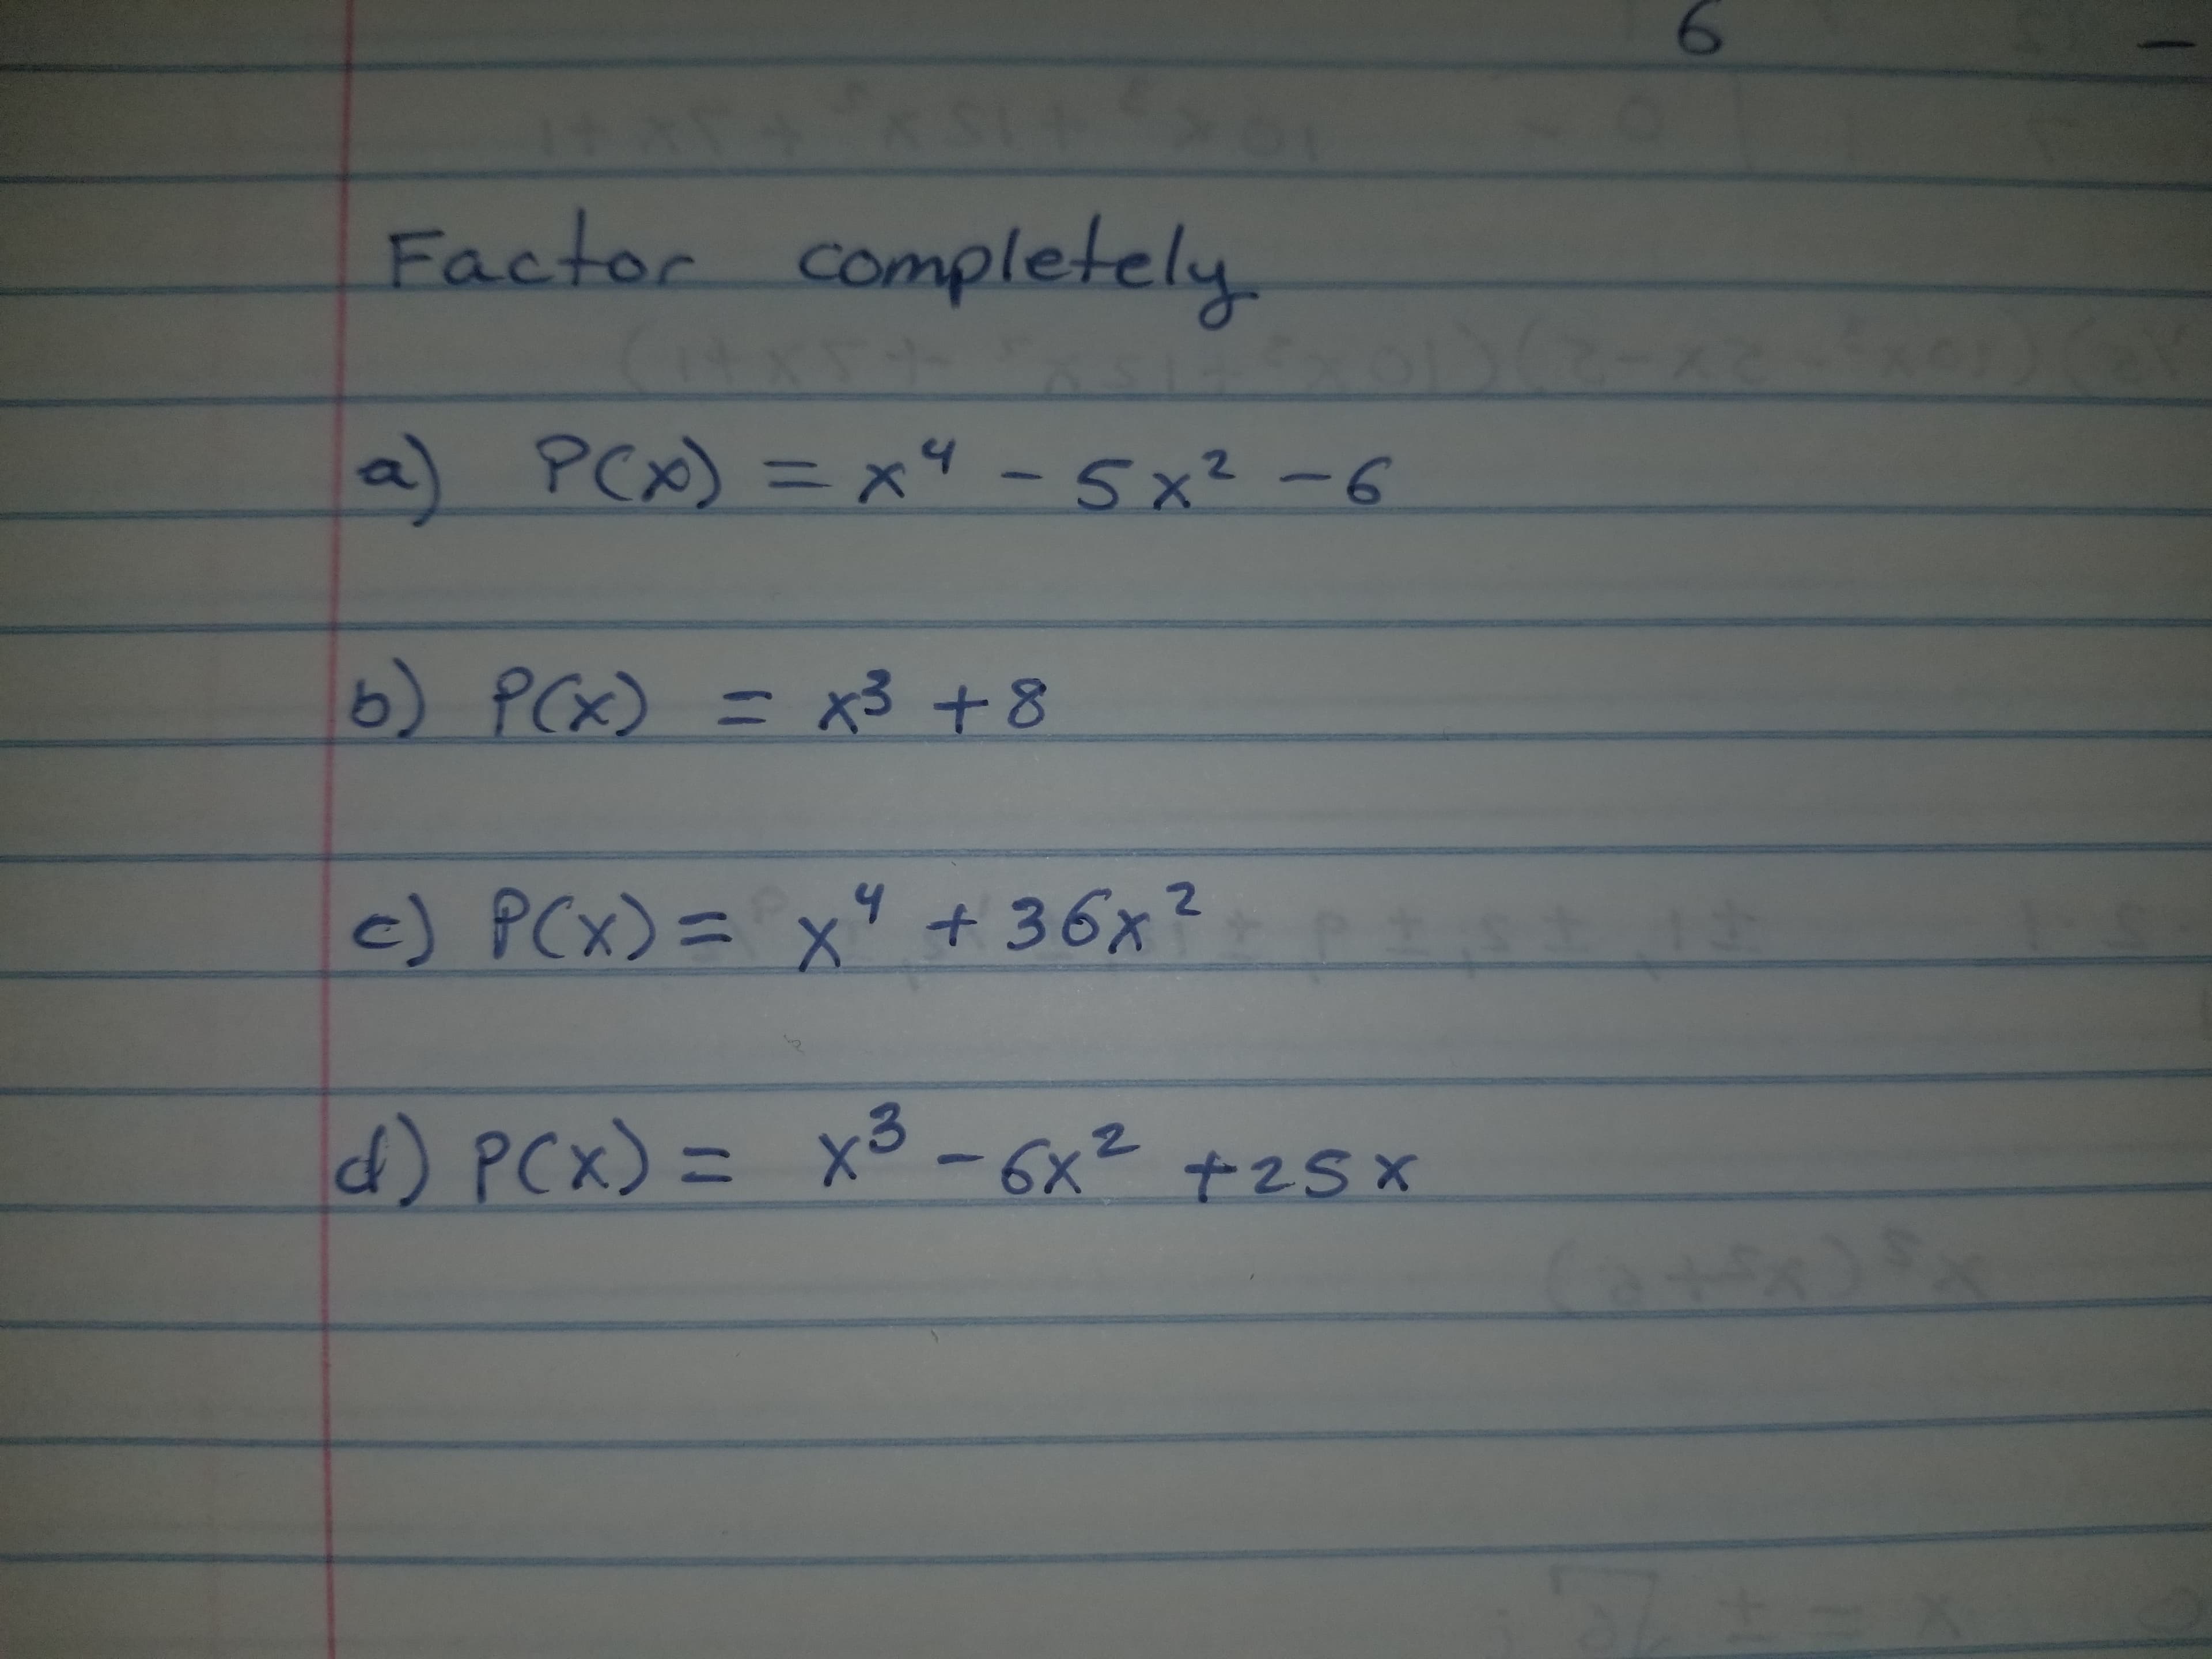 Factor completely
a) PCx)=x4-5x2-6
11
b Pa x3 +8
c) PCx)=x9 36x2
d PCx)=X-6x2 +25x
